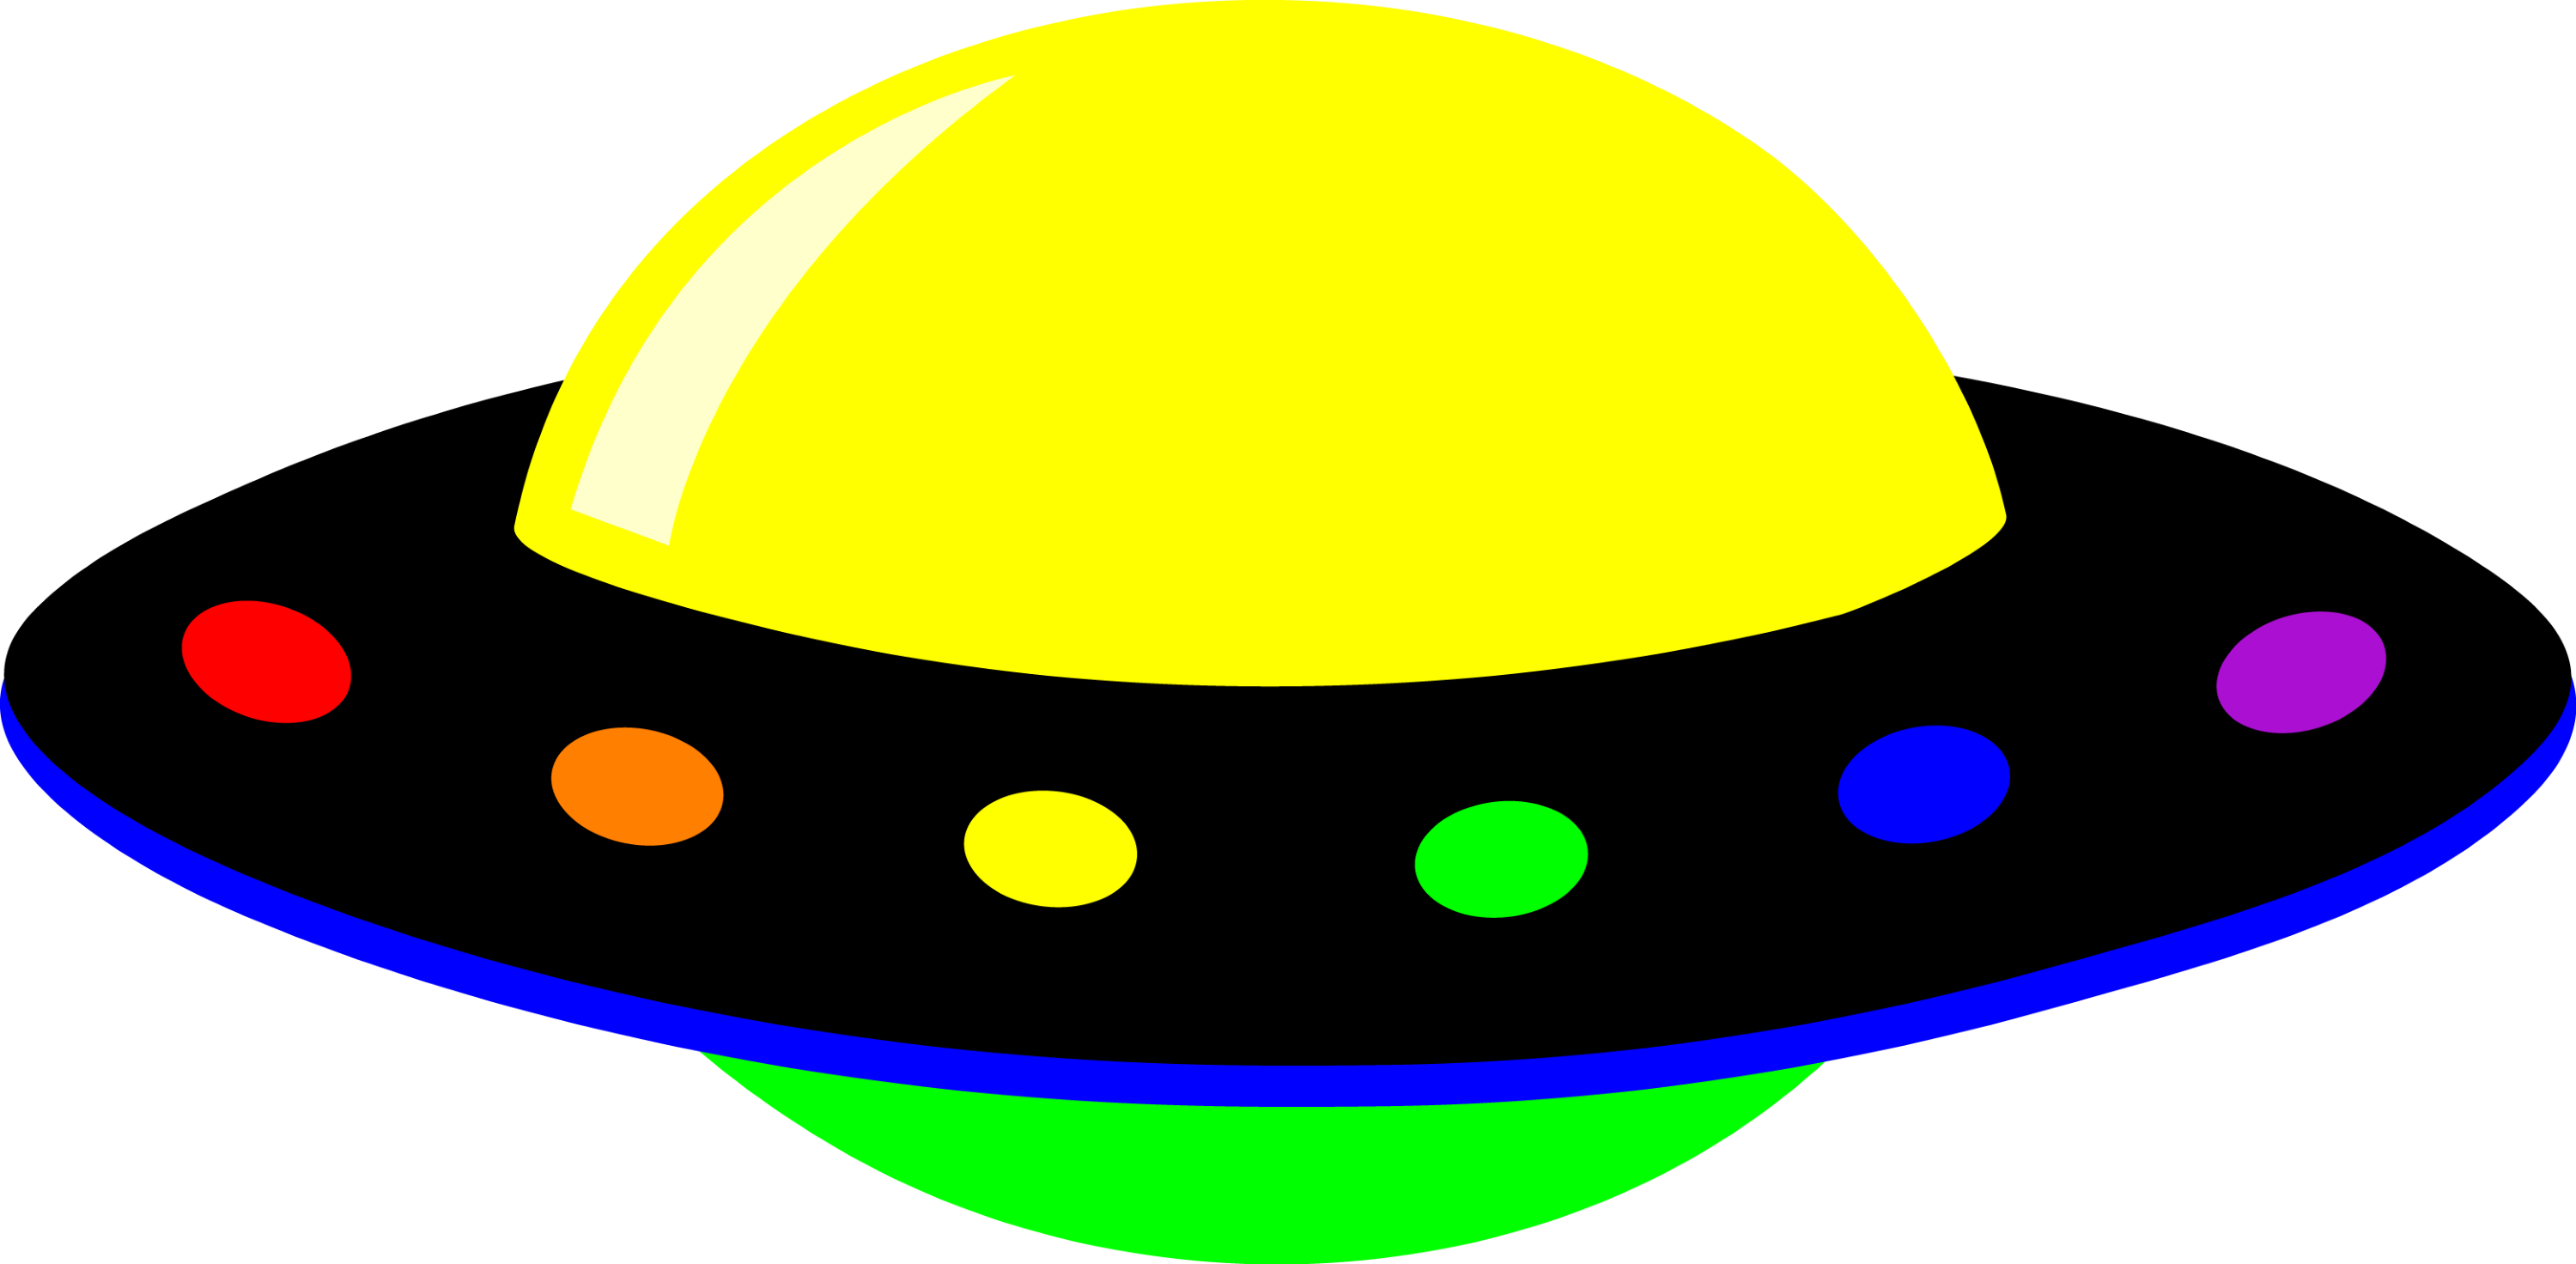 Neon Colorful Alien UFO - Free Clip Art